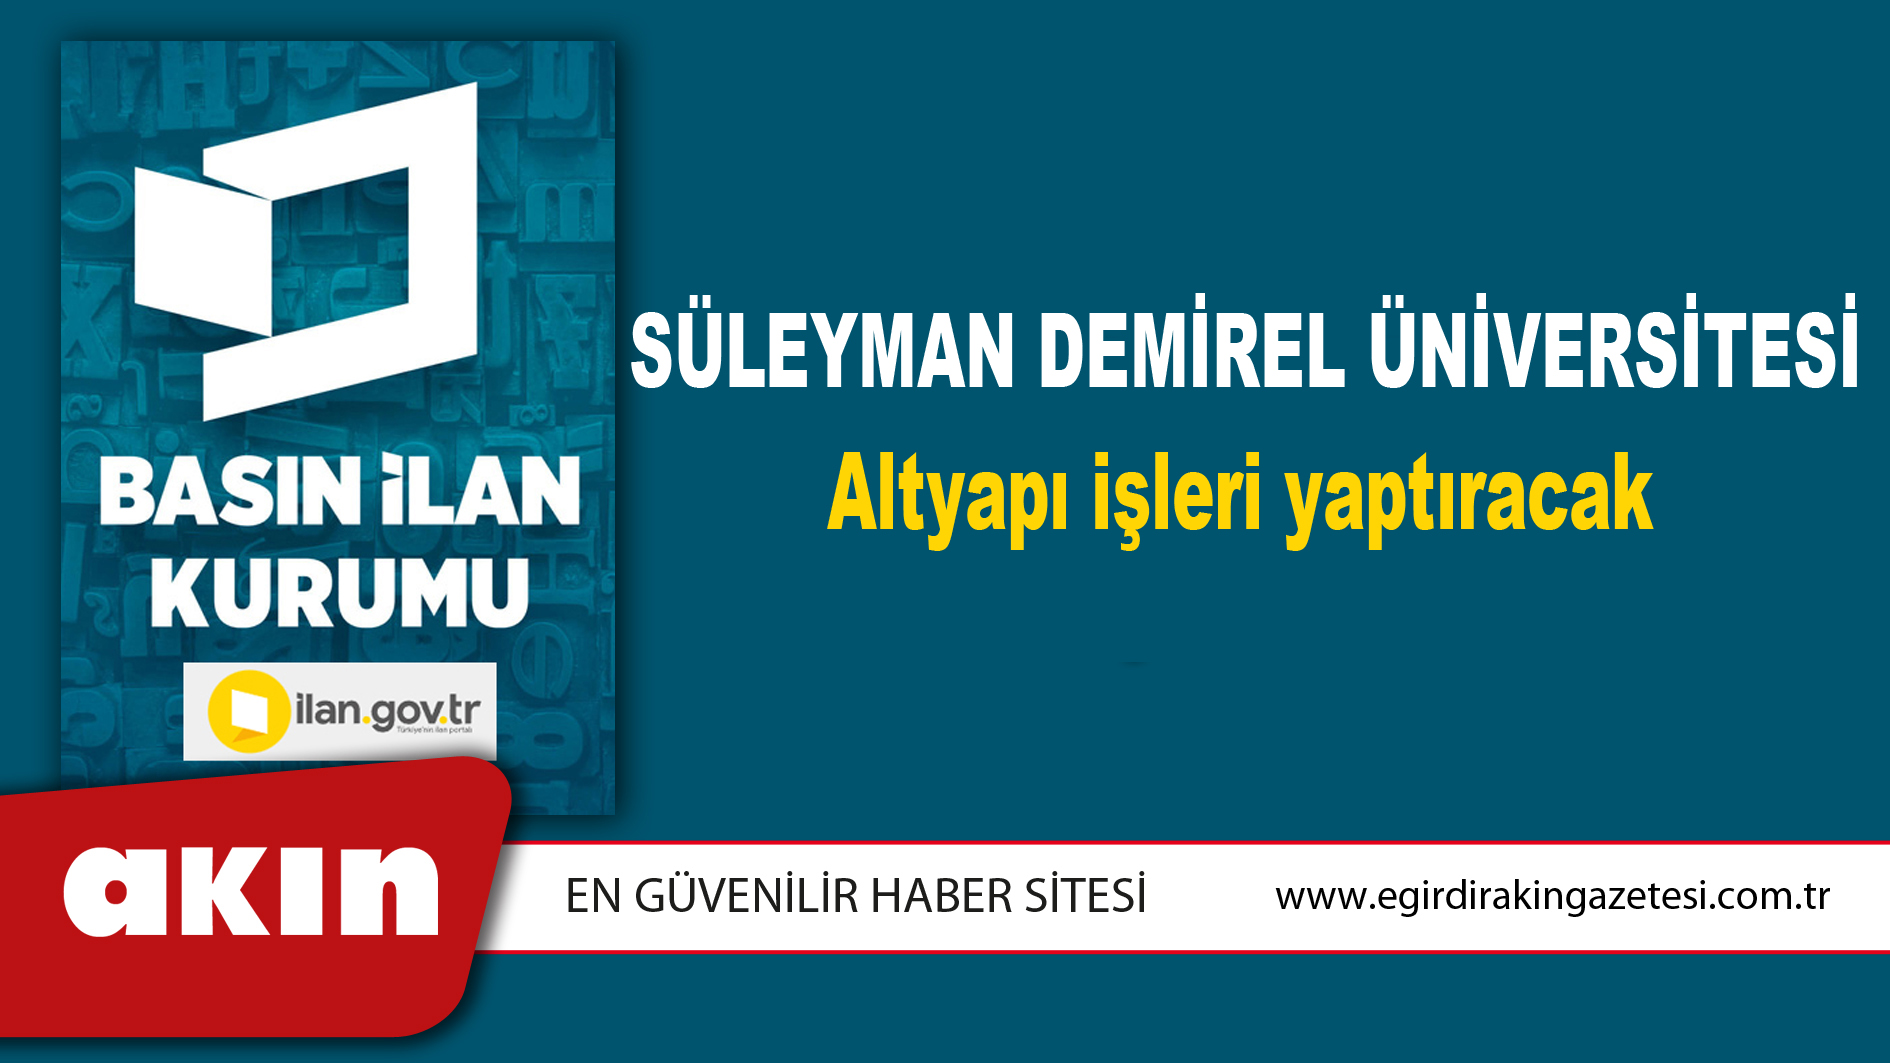 eğirdir haber,akın gazetesi,egirdir haberler,son dakika,Süleyman Demirel Üniversitesi Altyapı işleri yaptıracak